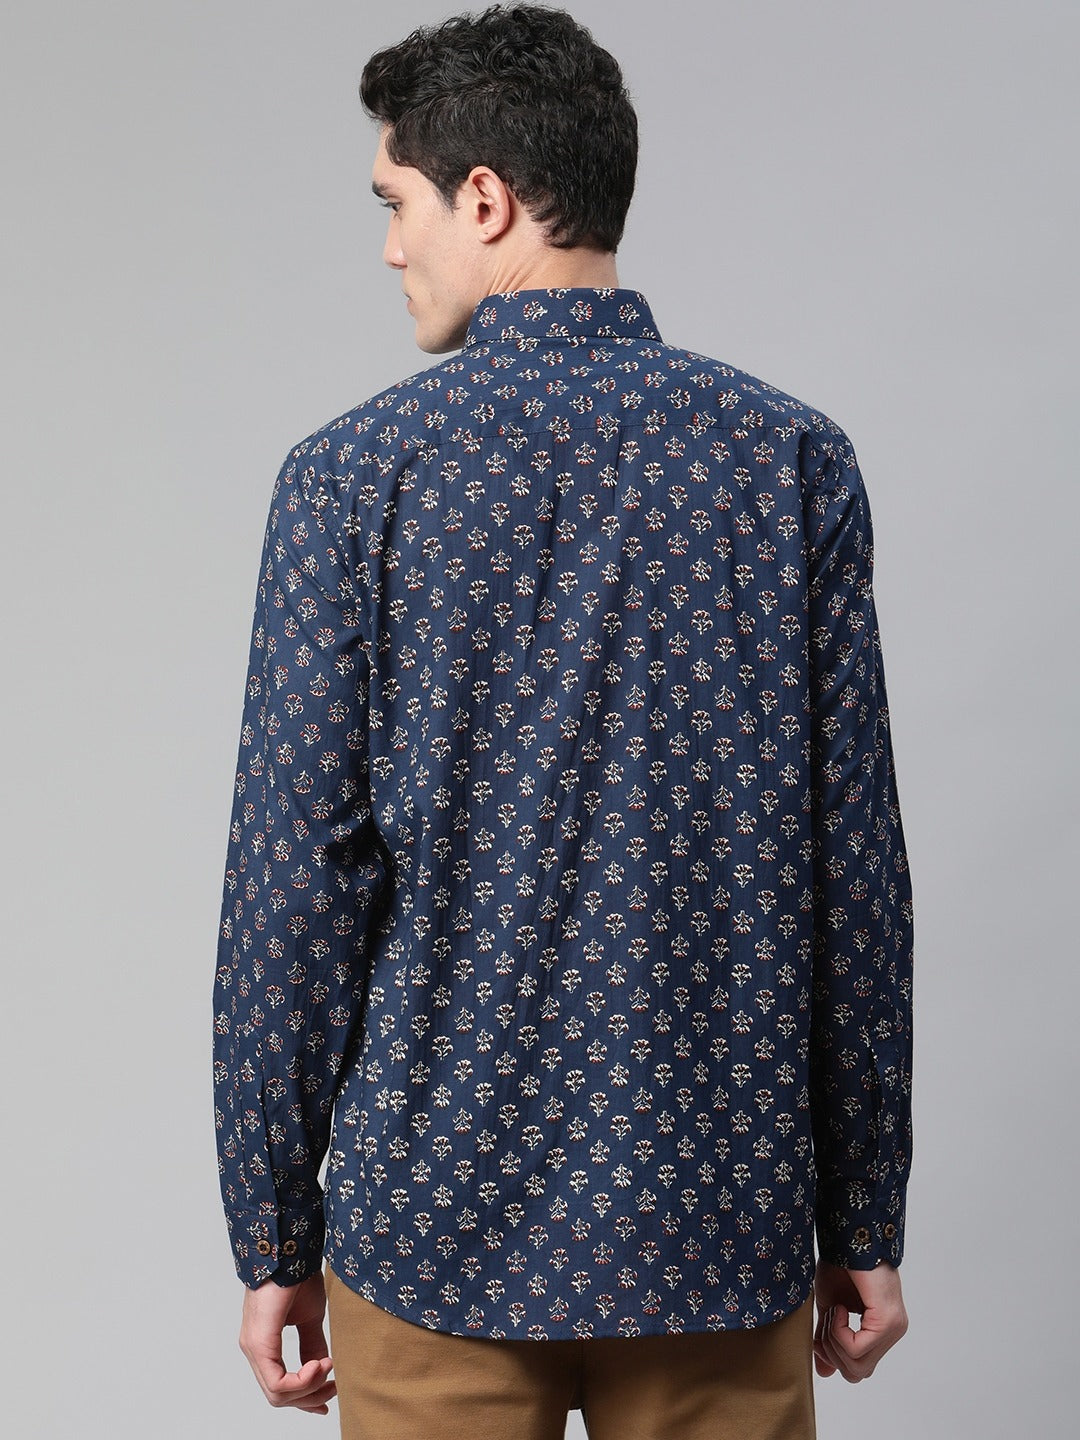 Millennial Men Navy Blue Comfort Printed Casual Shirt